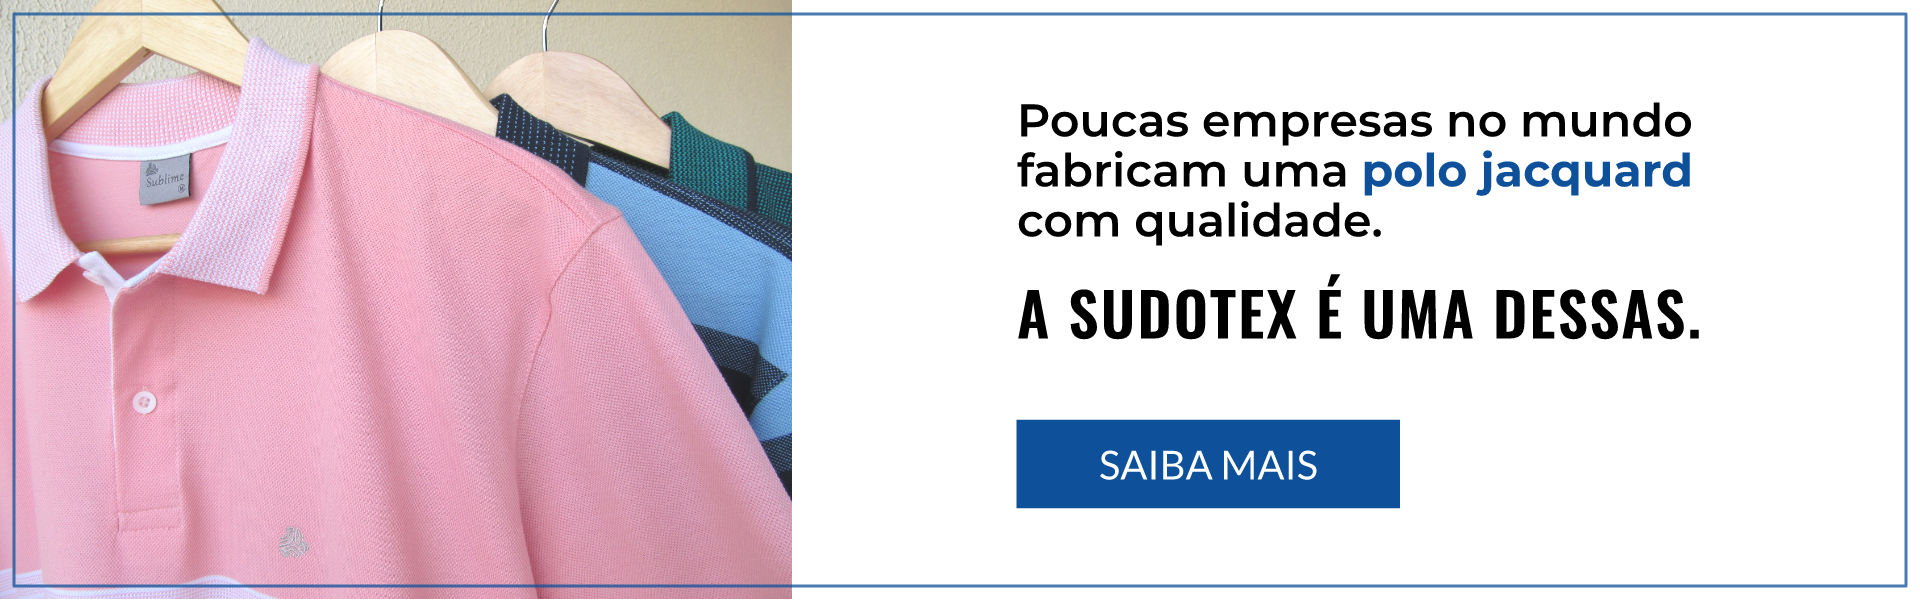 Camisa Polo Sudotex com qualidade jacquard